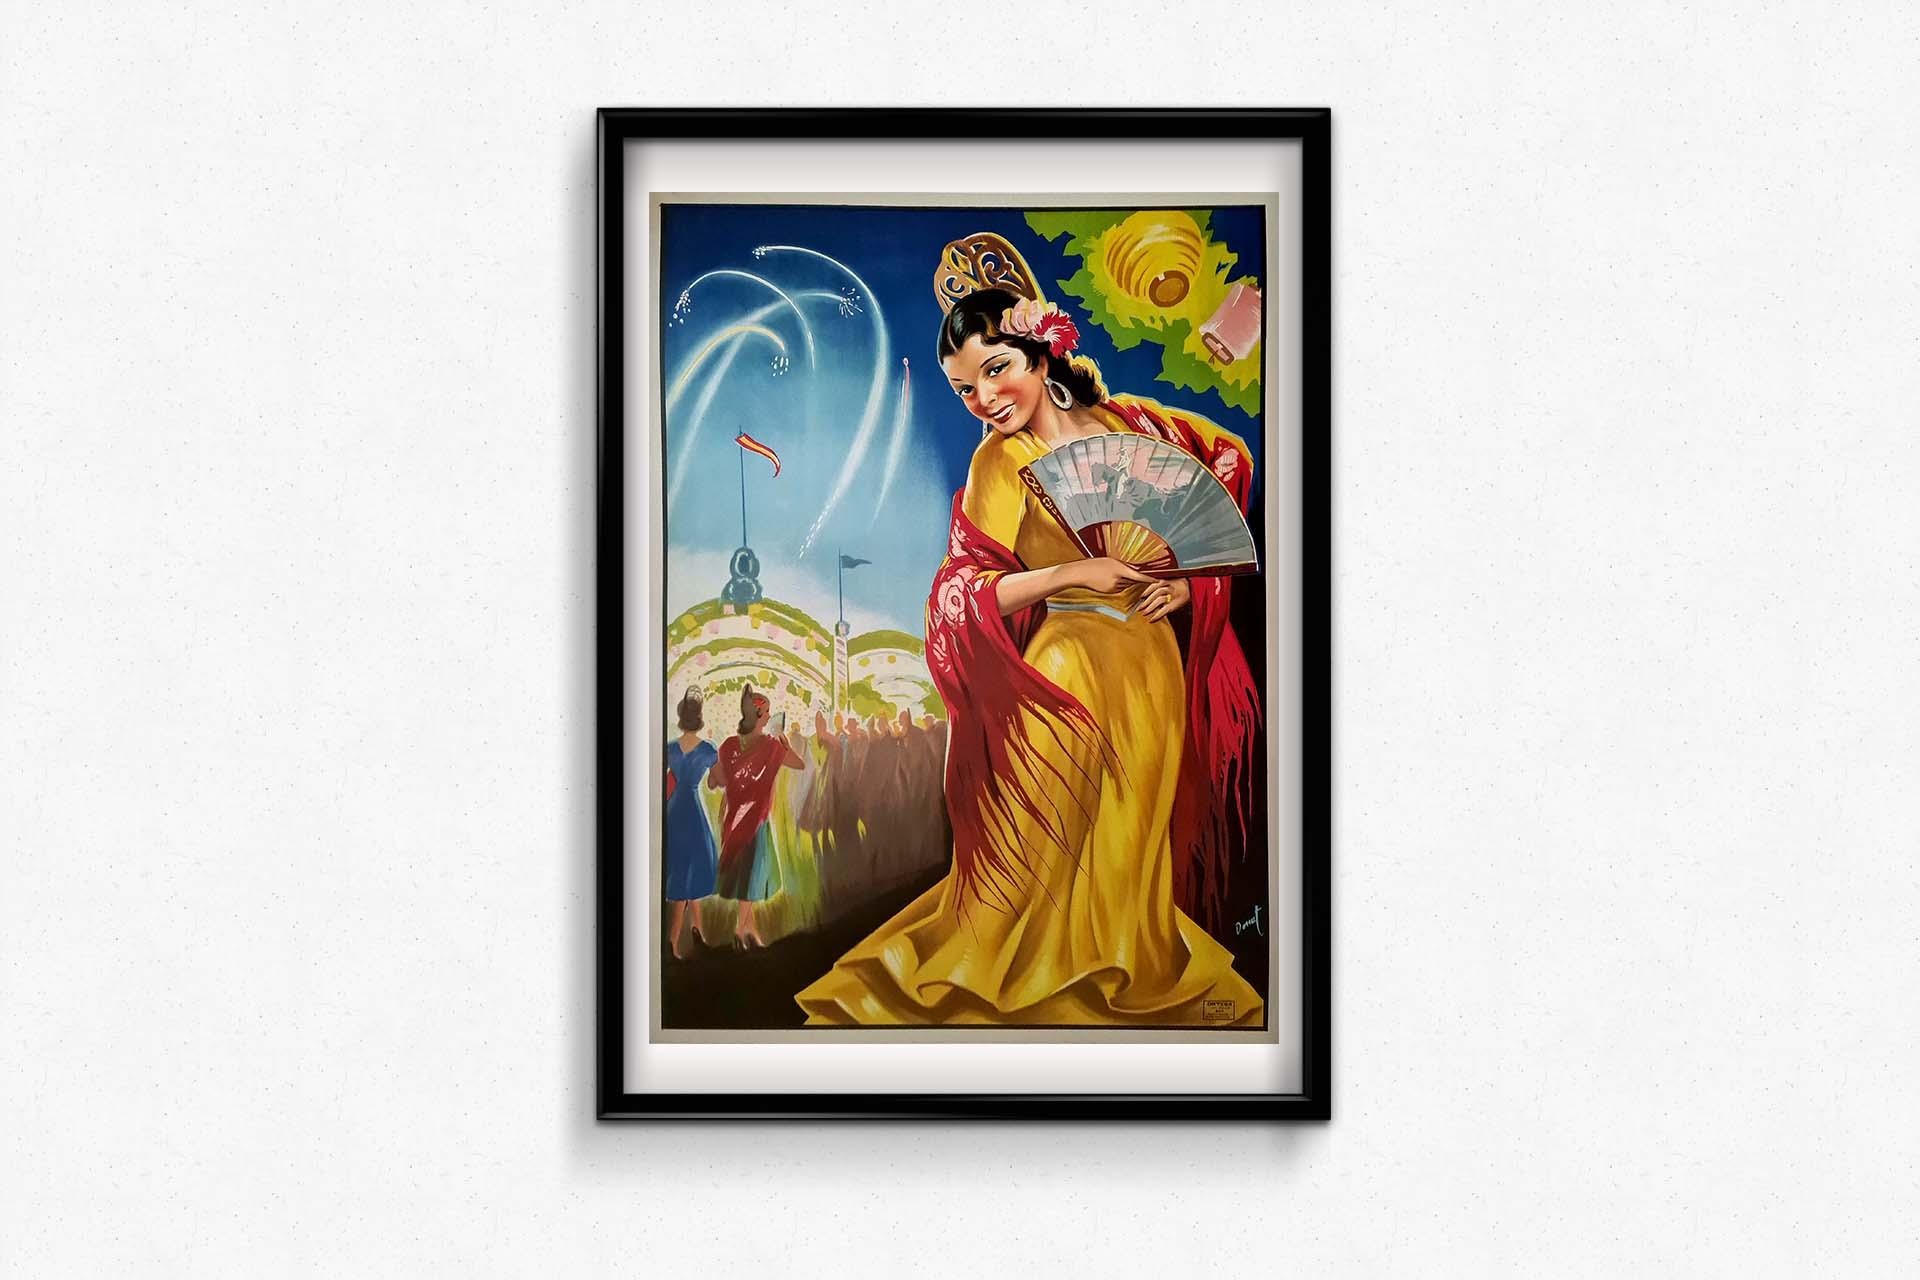 Das Originalplakat von Fiestas Mujer Andaluza aus dem Jahr 1947 verkörpert den lebendigen Geist der andalusischen Kultur und des Feierns. Dieses Kunstwerk ist eine visuelle Einladung, in die reichen Traditionen und Festlichkeiten der Region